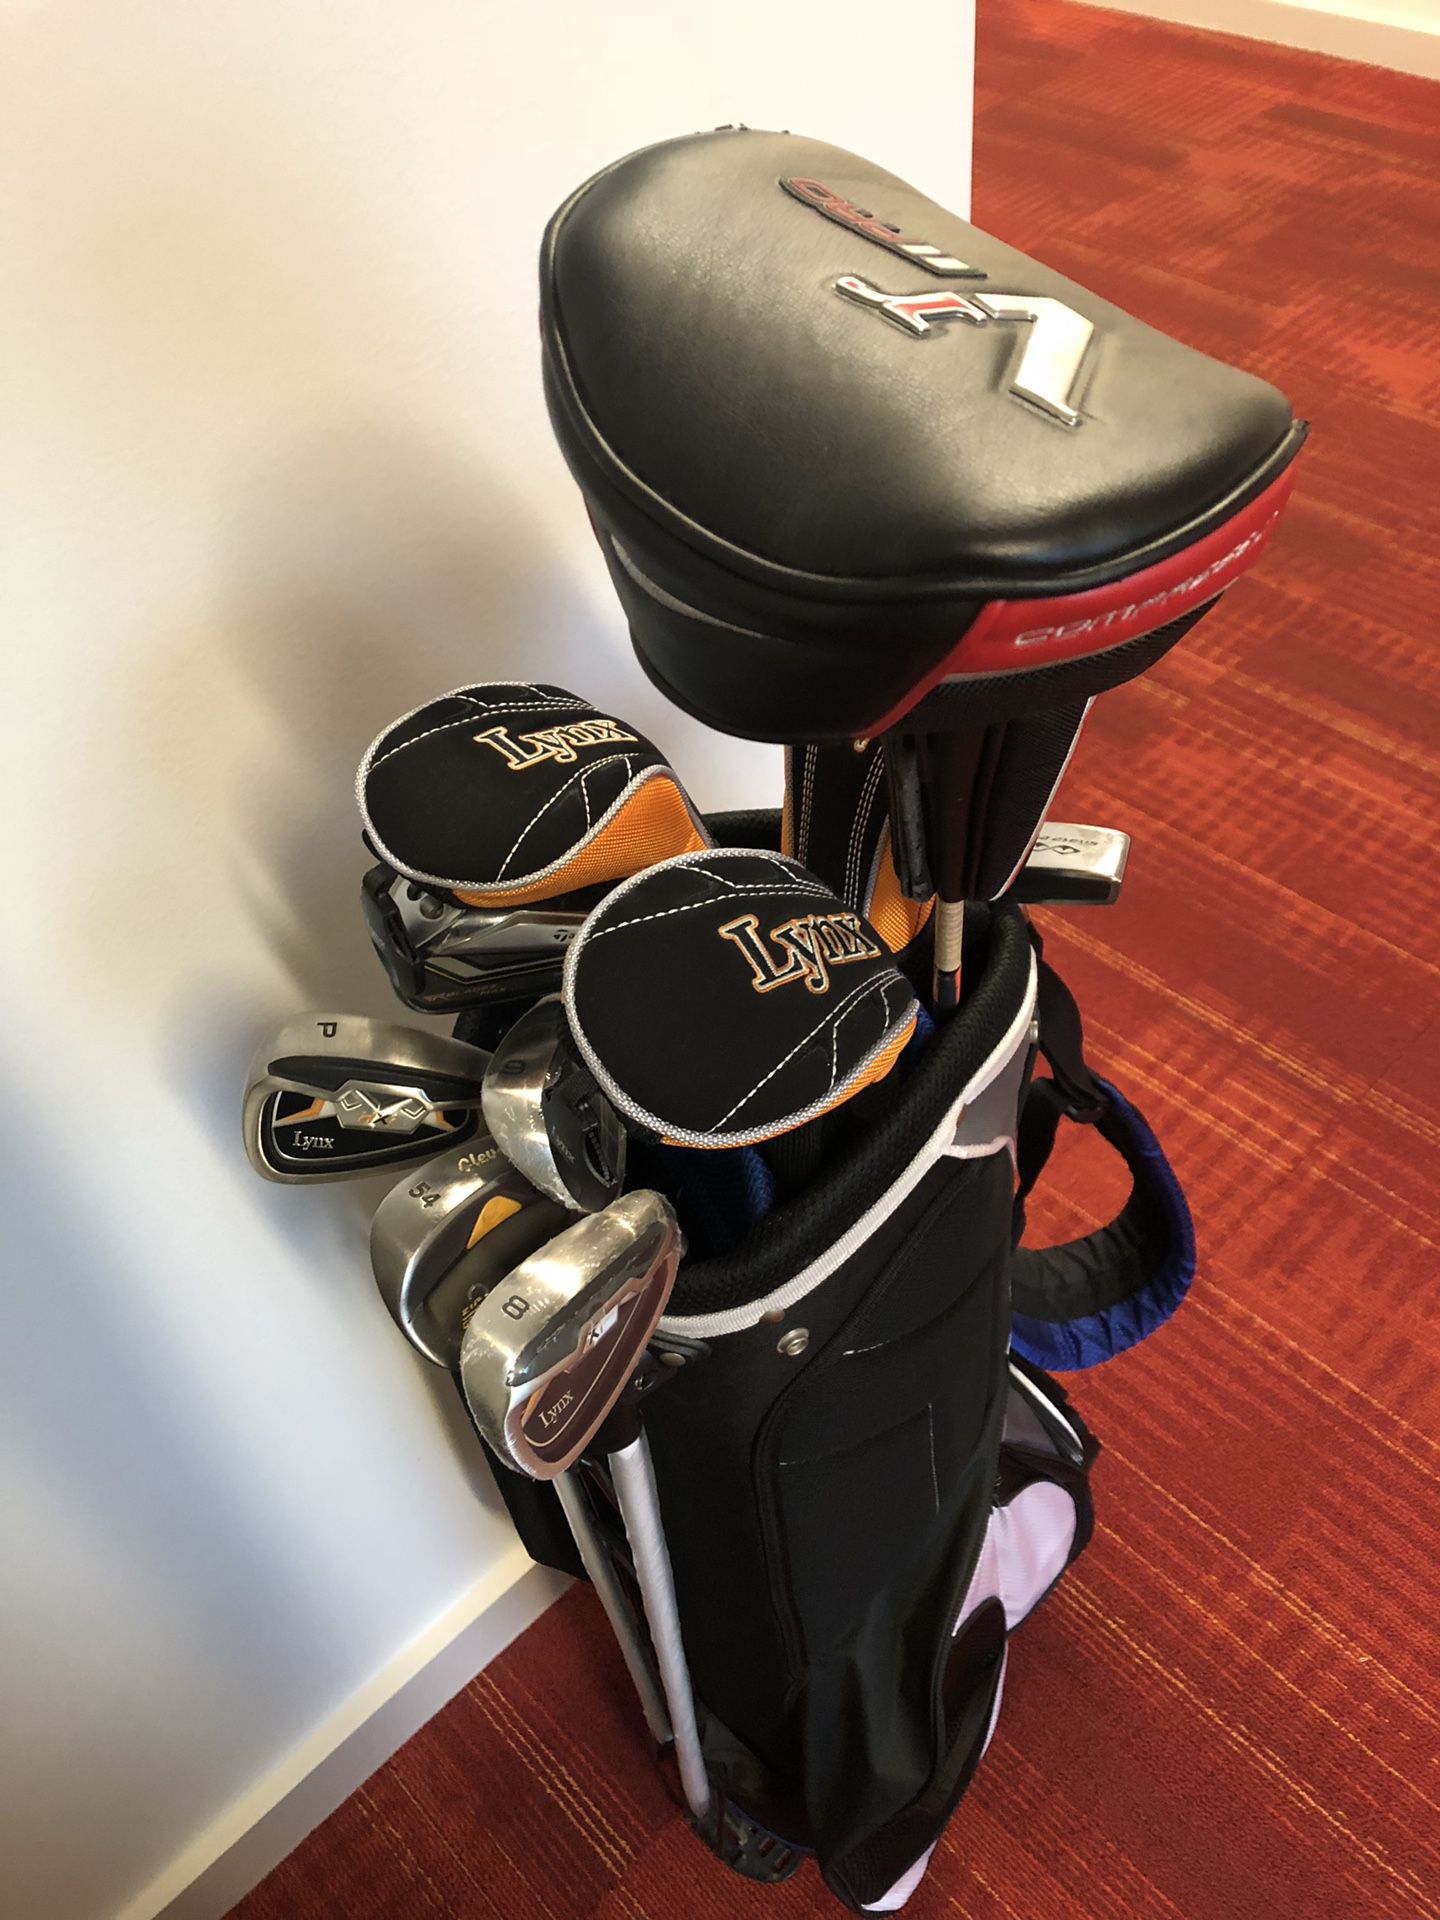 Power bilt golf bag with clubs